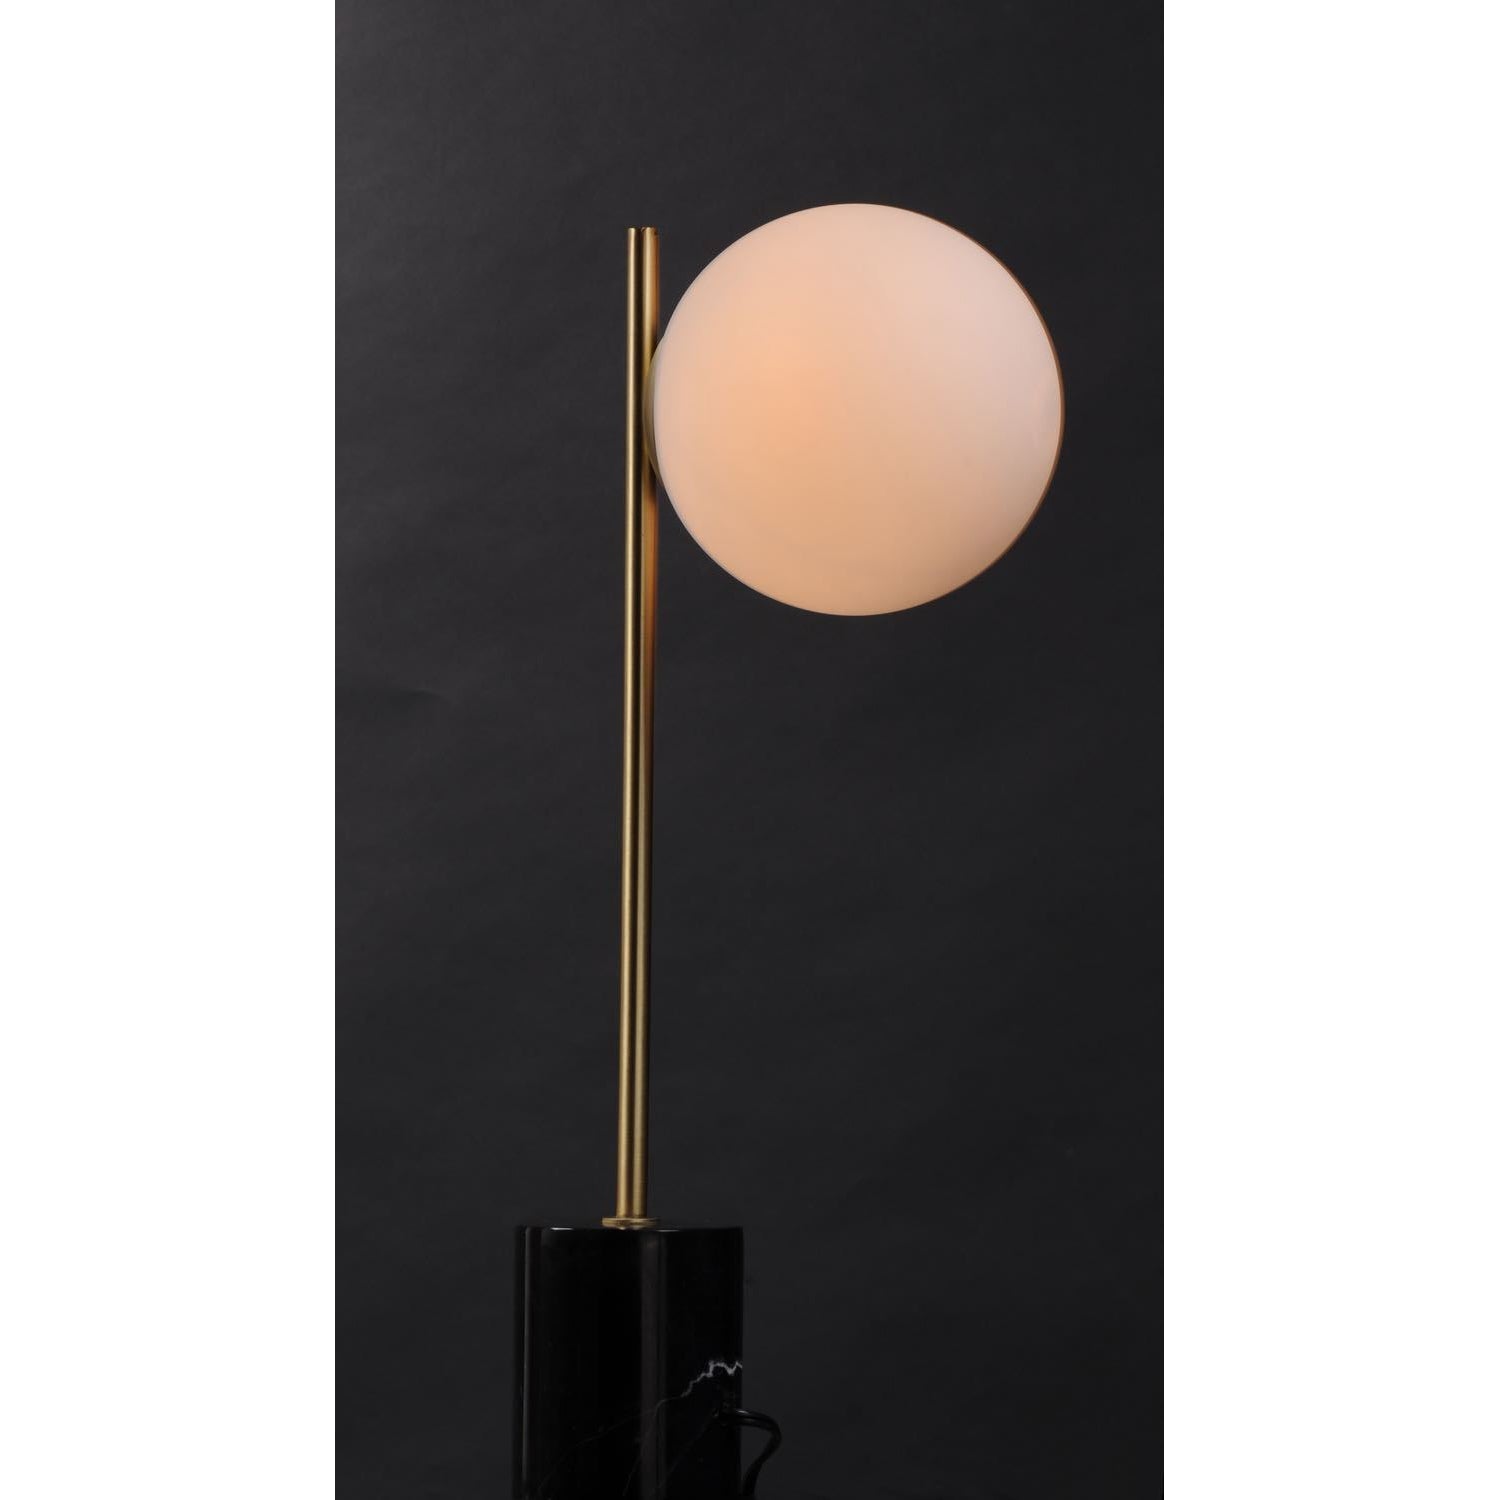 Vesper Table Lamp Satin Brass / Black